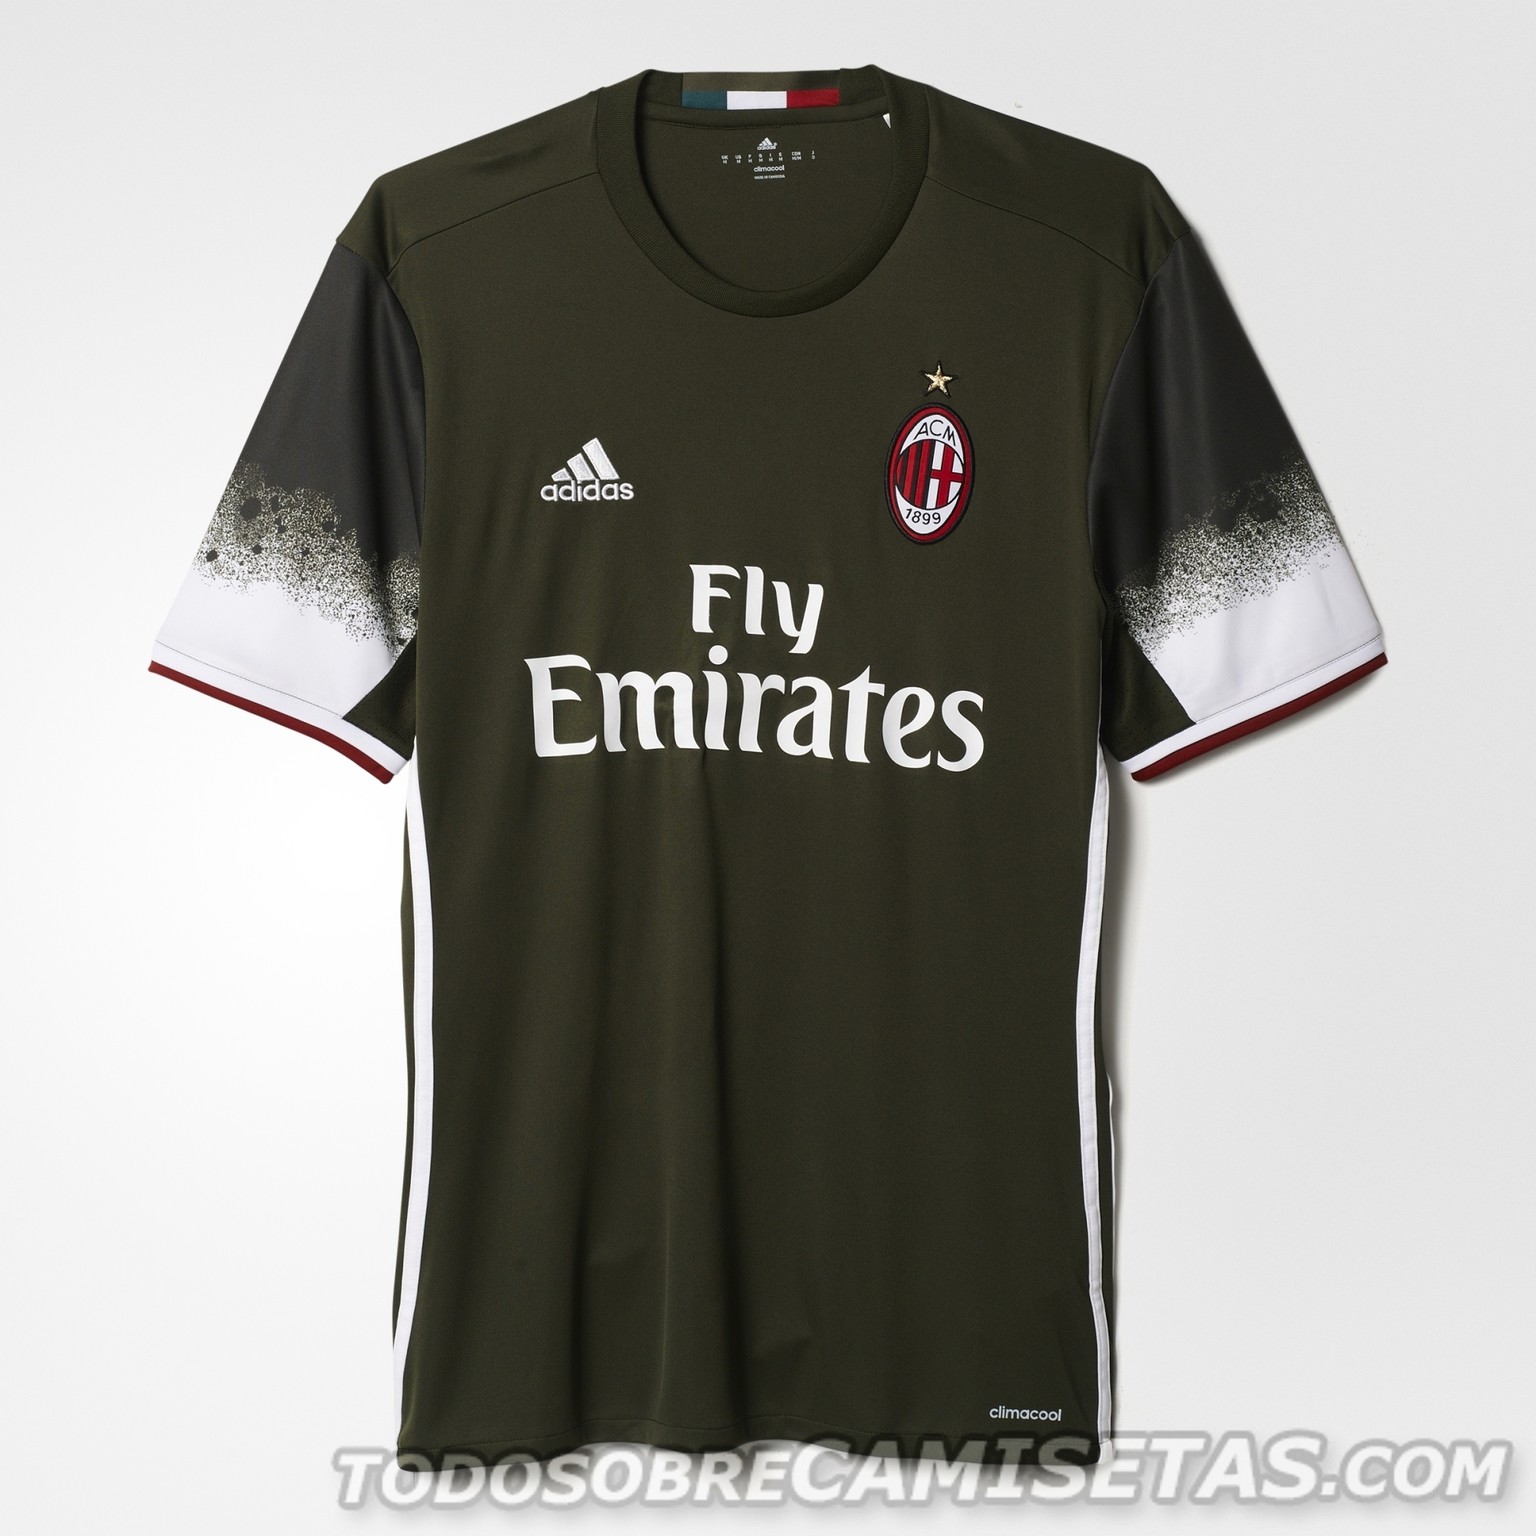 AC Milan adidas 2016-17 third kit